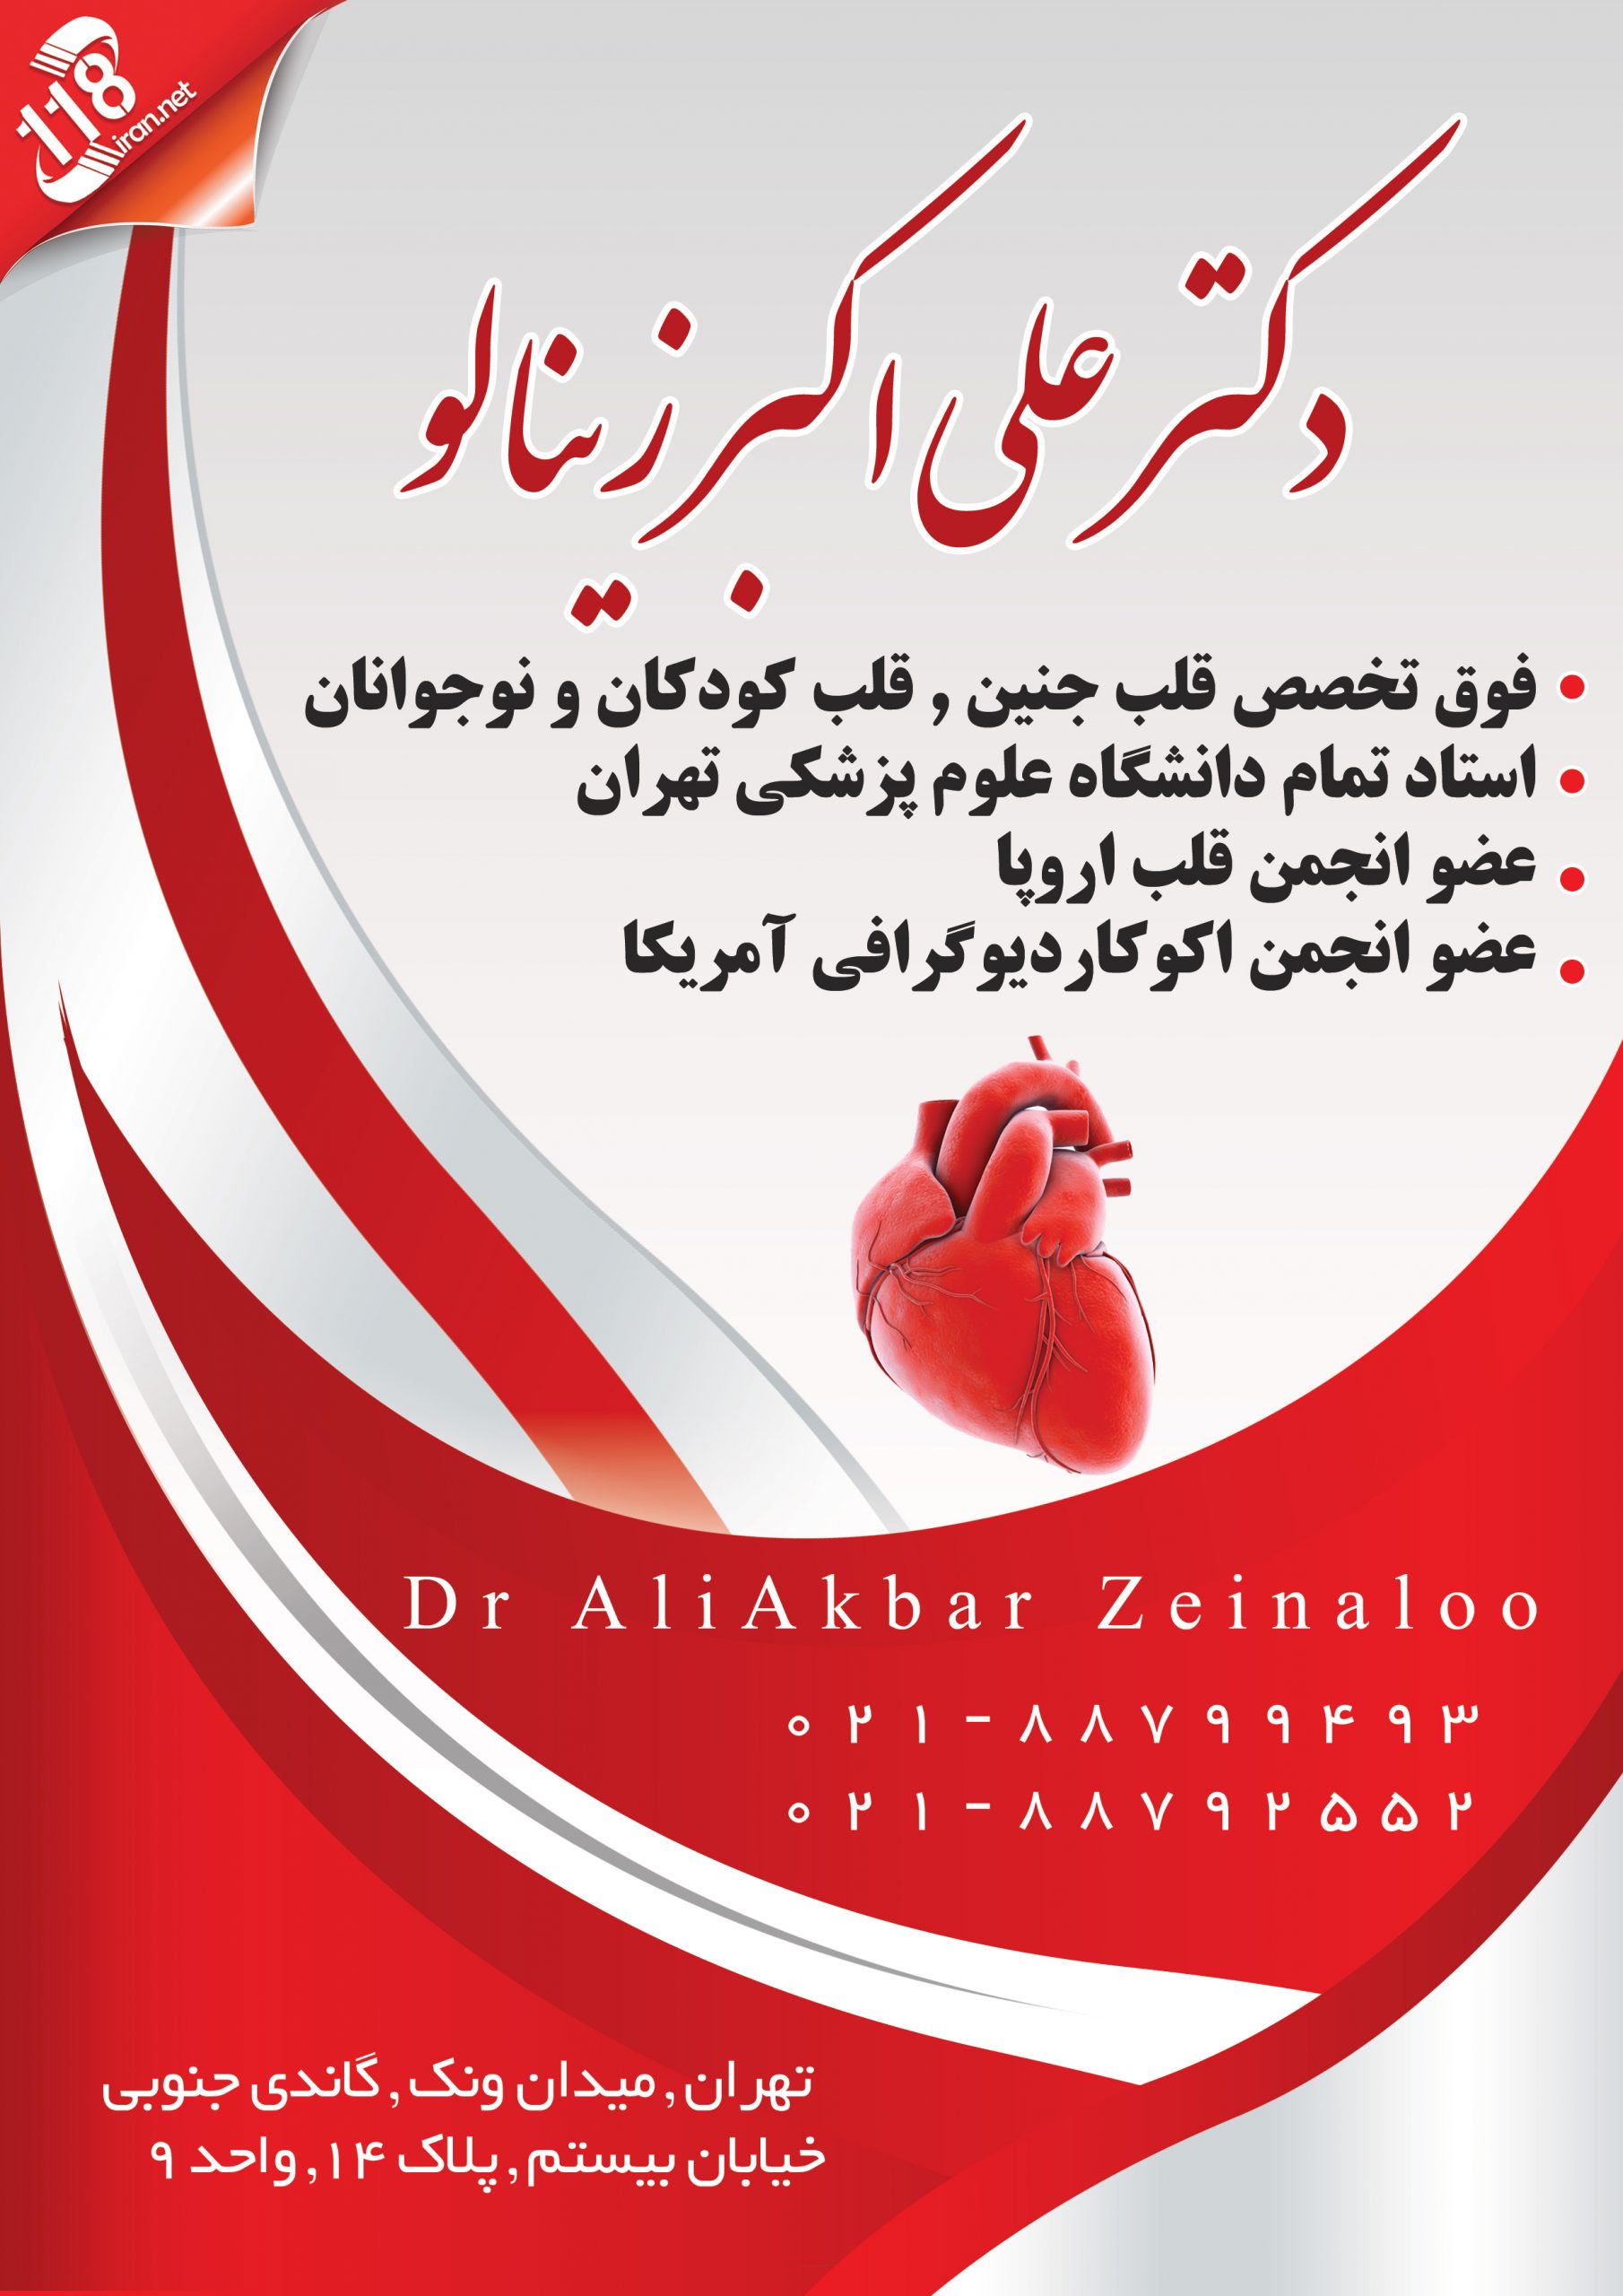  دکتر علی اکبر زینالو در تهران